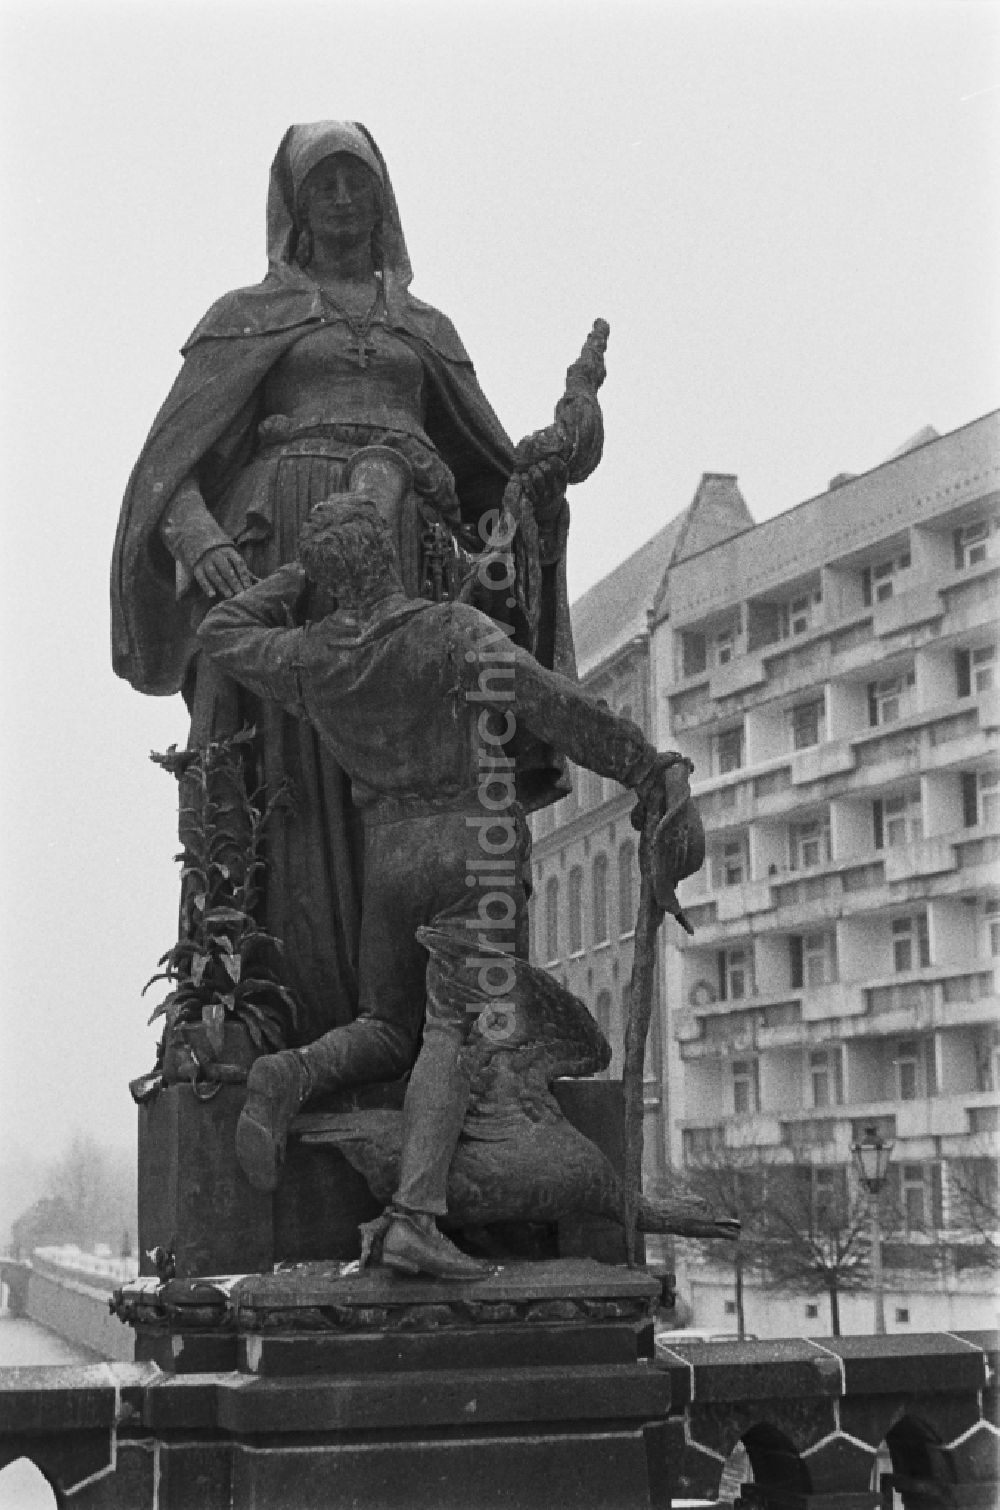 Berlin: Skulptur Heilige Gertraud in Berlin, der ehemaligen Hauptstadt der DDR, Deutsche Demokratische Republik